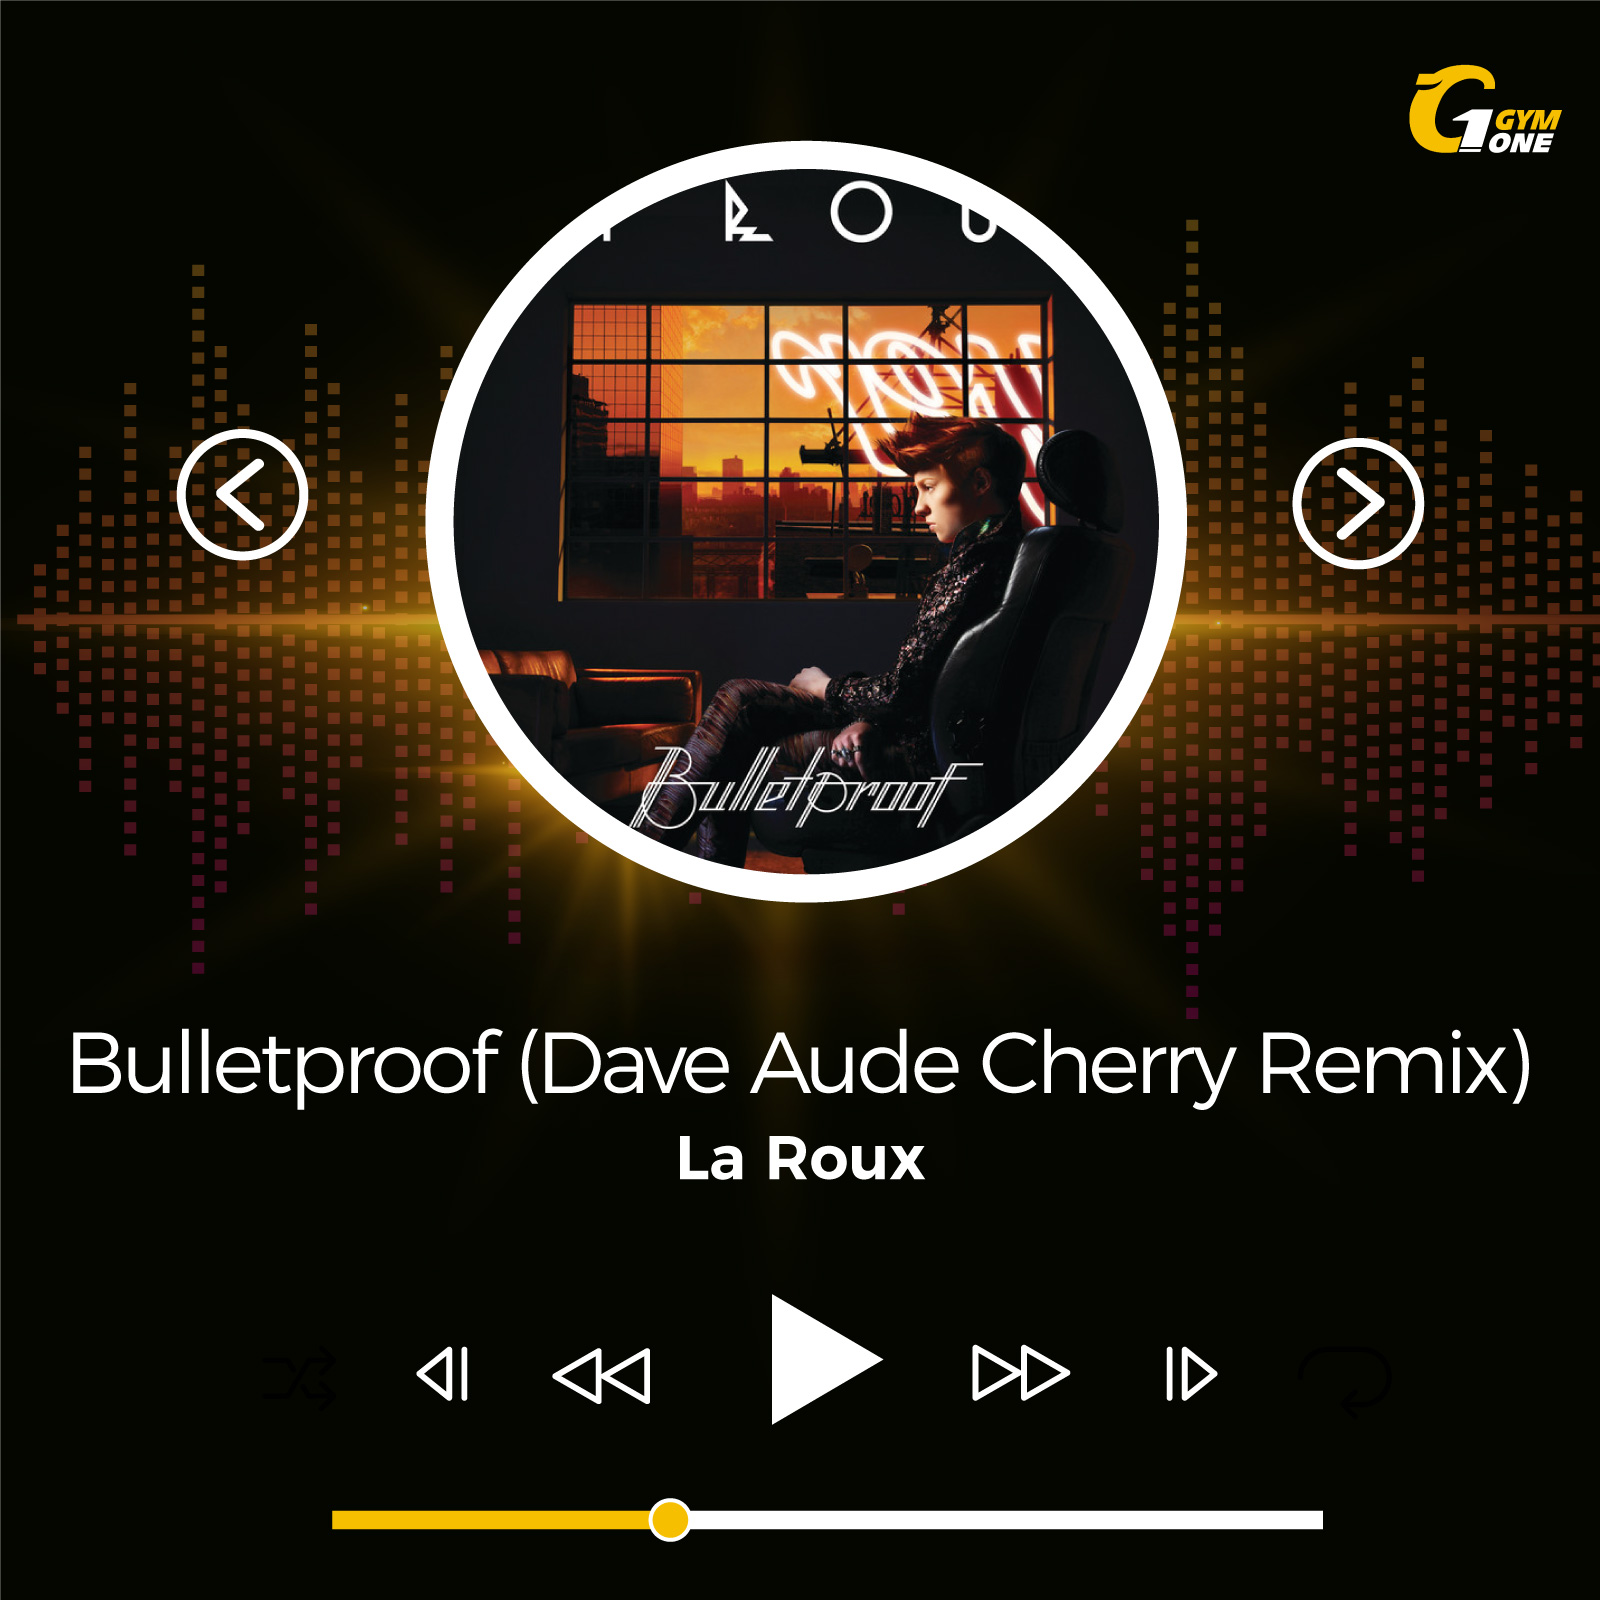 Bulletproof (Dave Aude’s Cherry mix) – La Roux